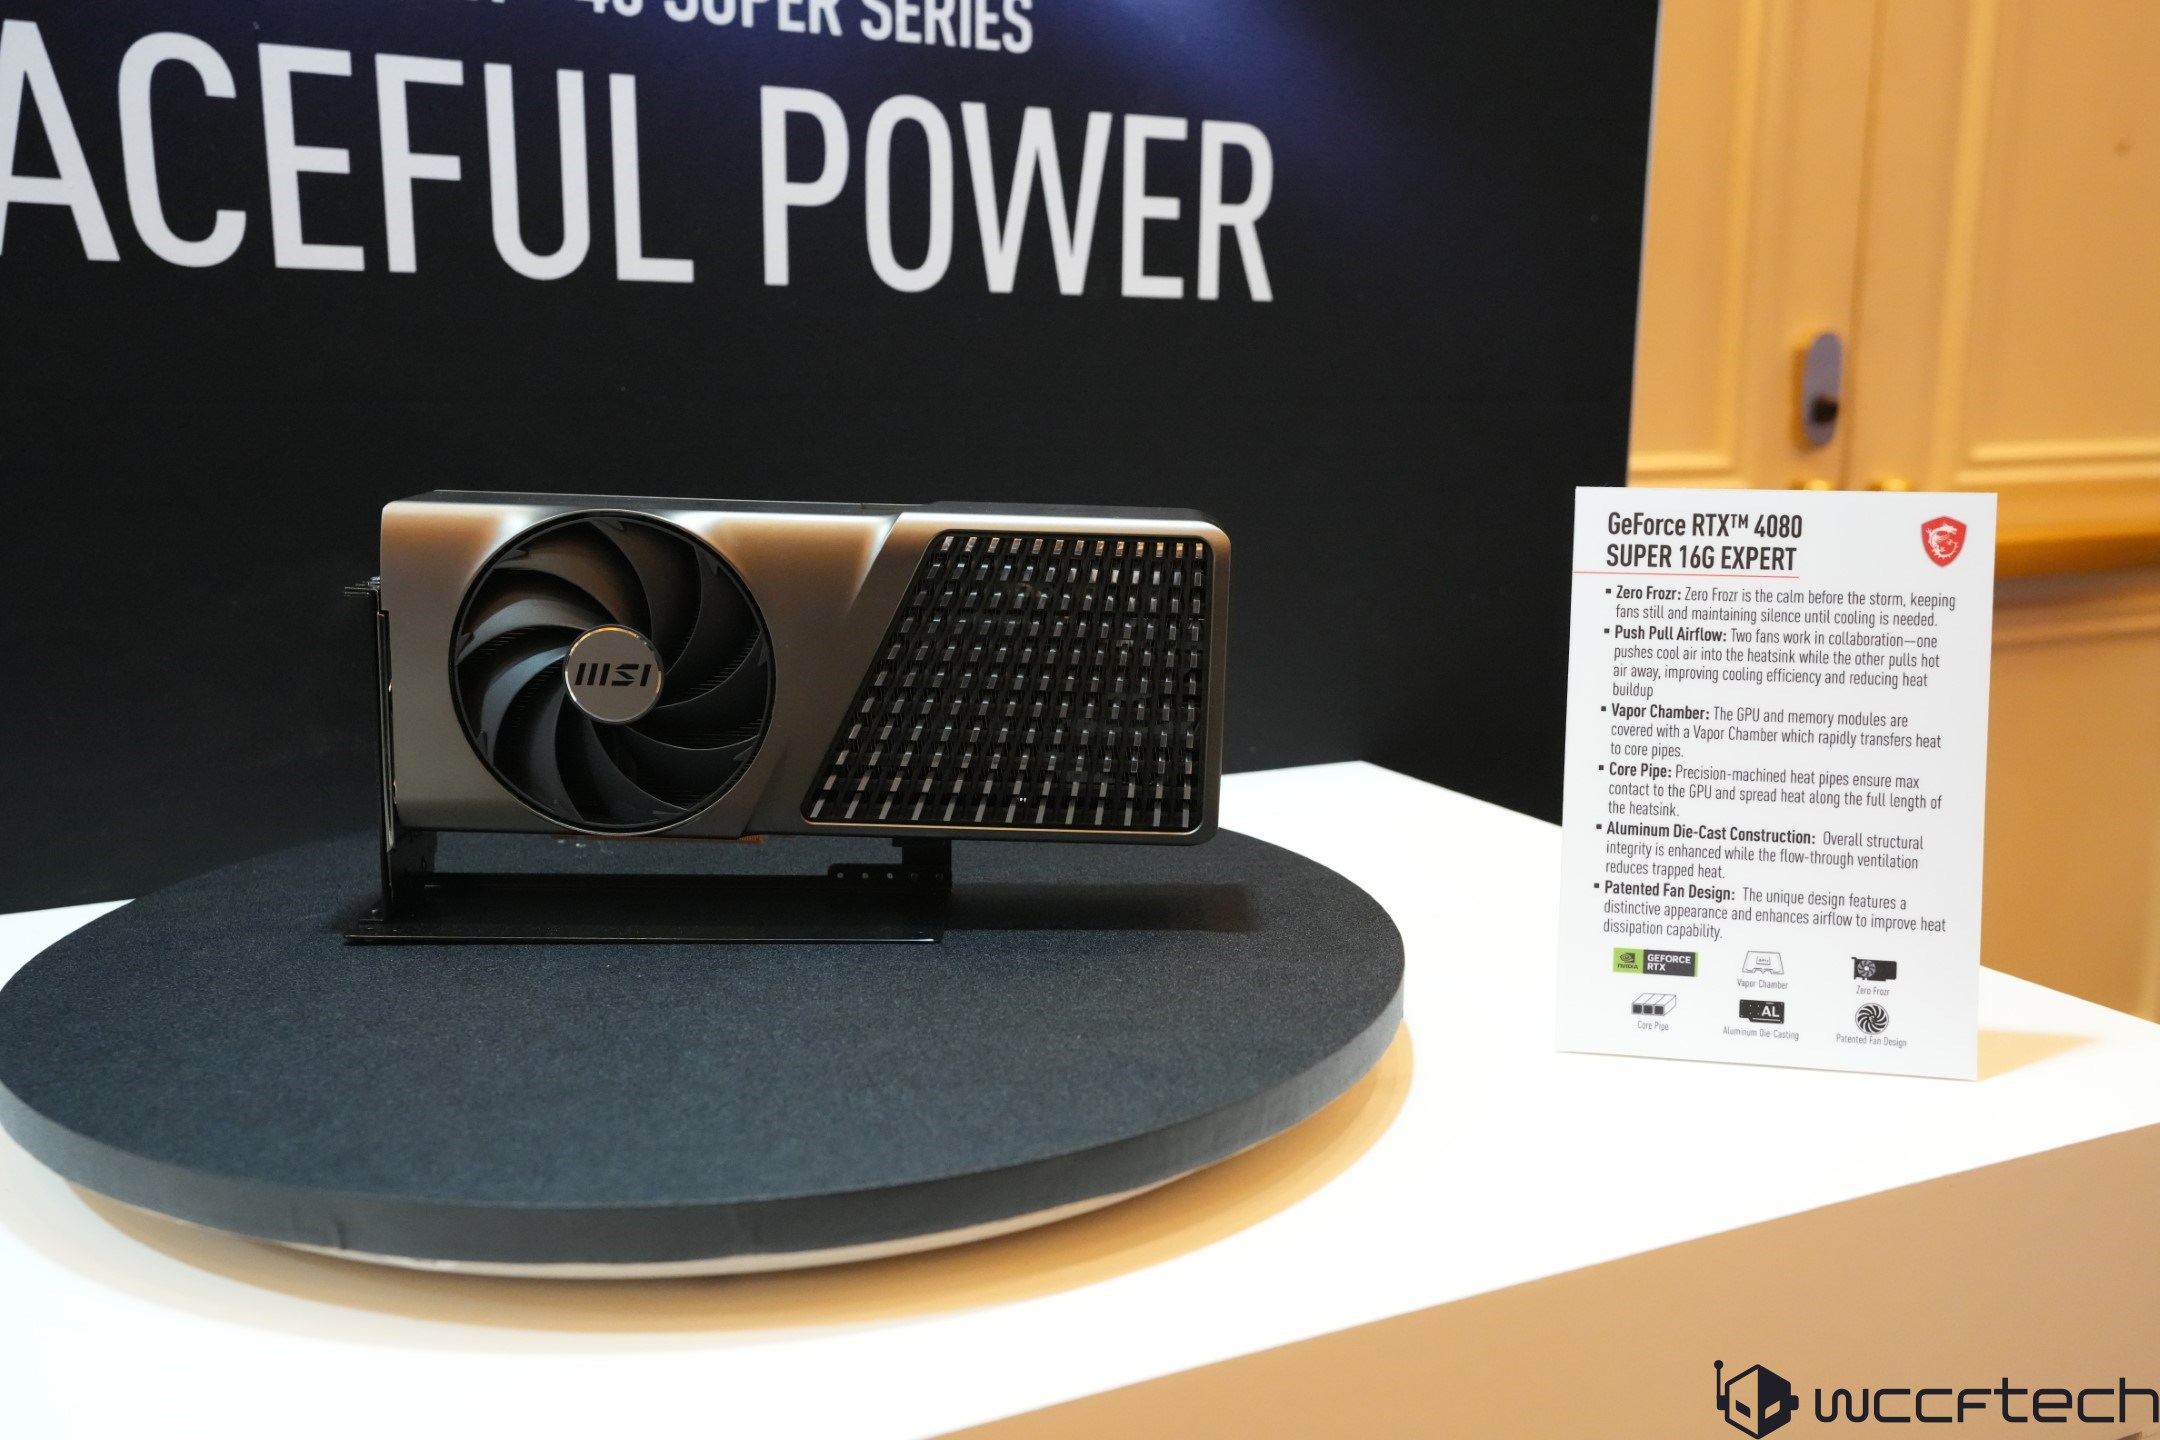 MSI EXPERT-GPUs verfügen über ein wunderschönes Design und einen Flow-Throw-Kühler ähnlich der Founders Edition von NVIDIA und werden mit SUPER Cards 2 eingeführt